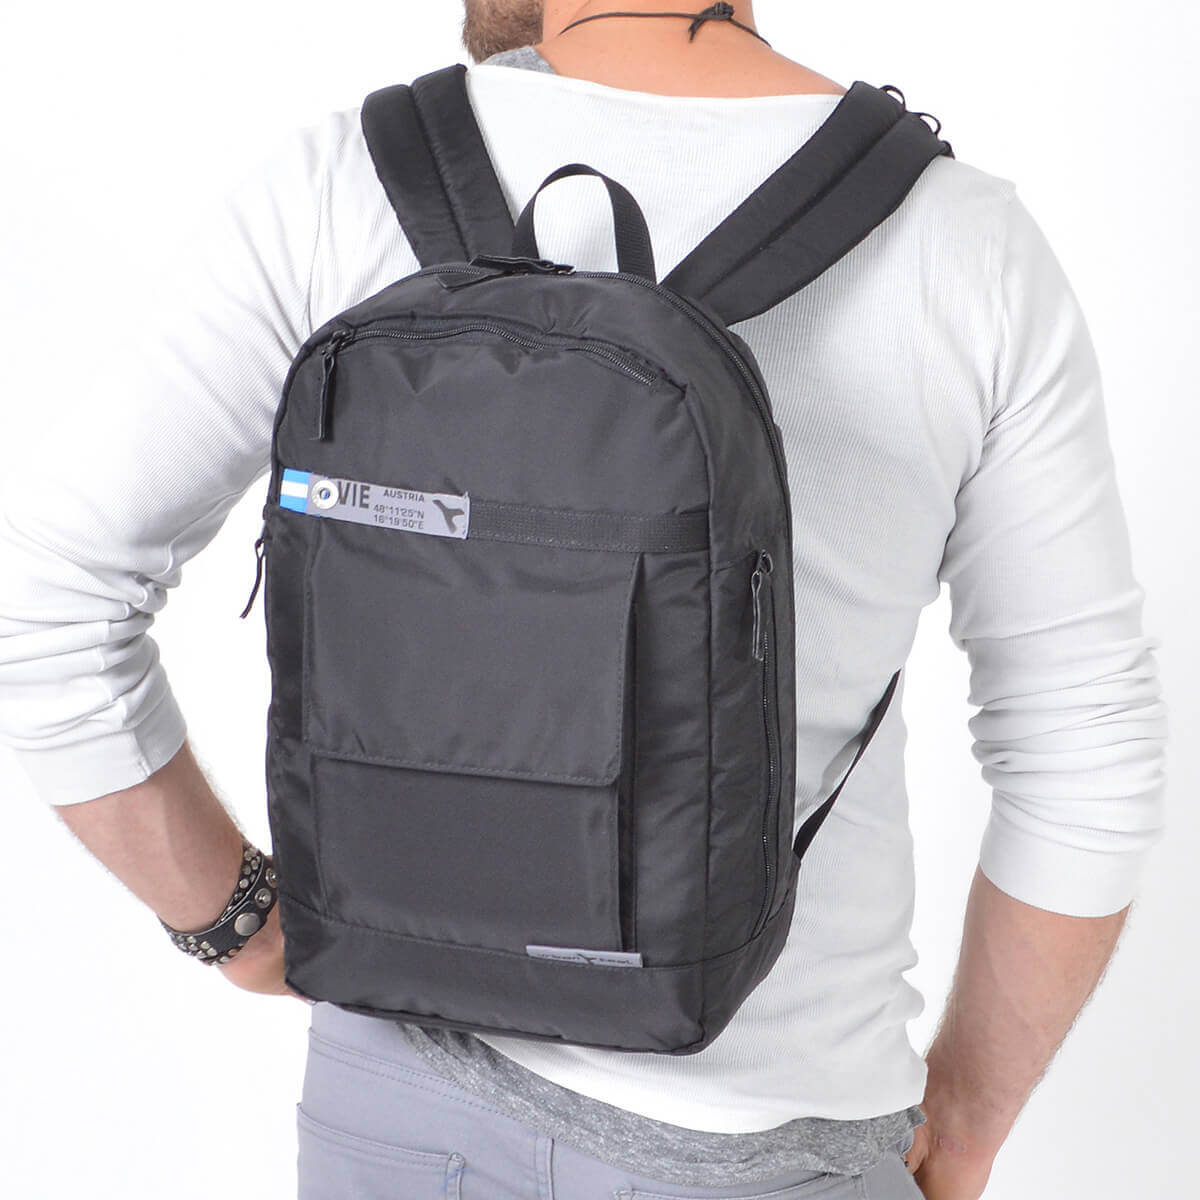 backpack for light travel